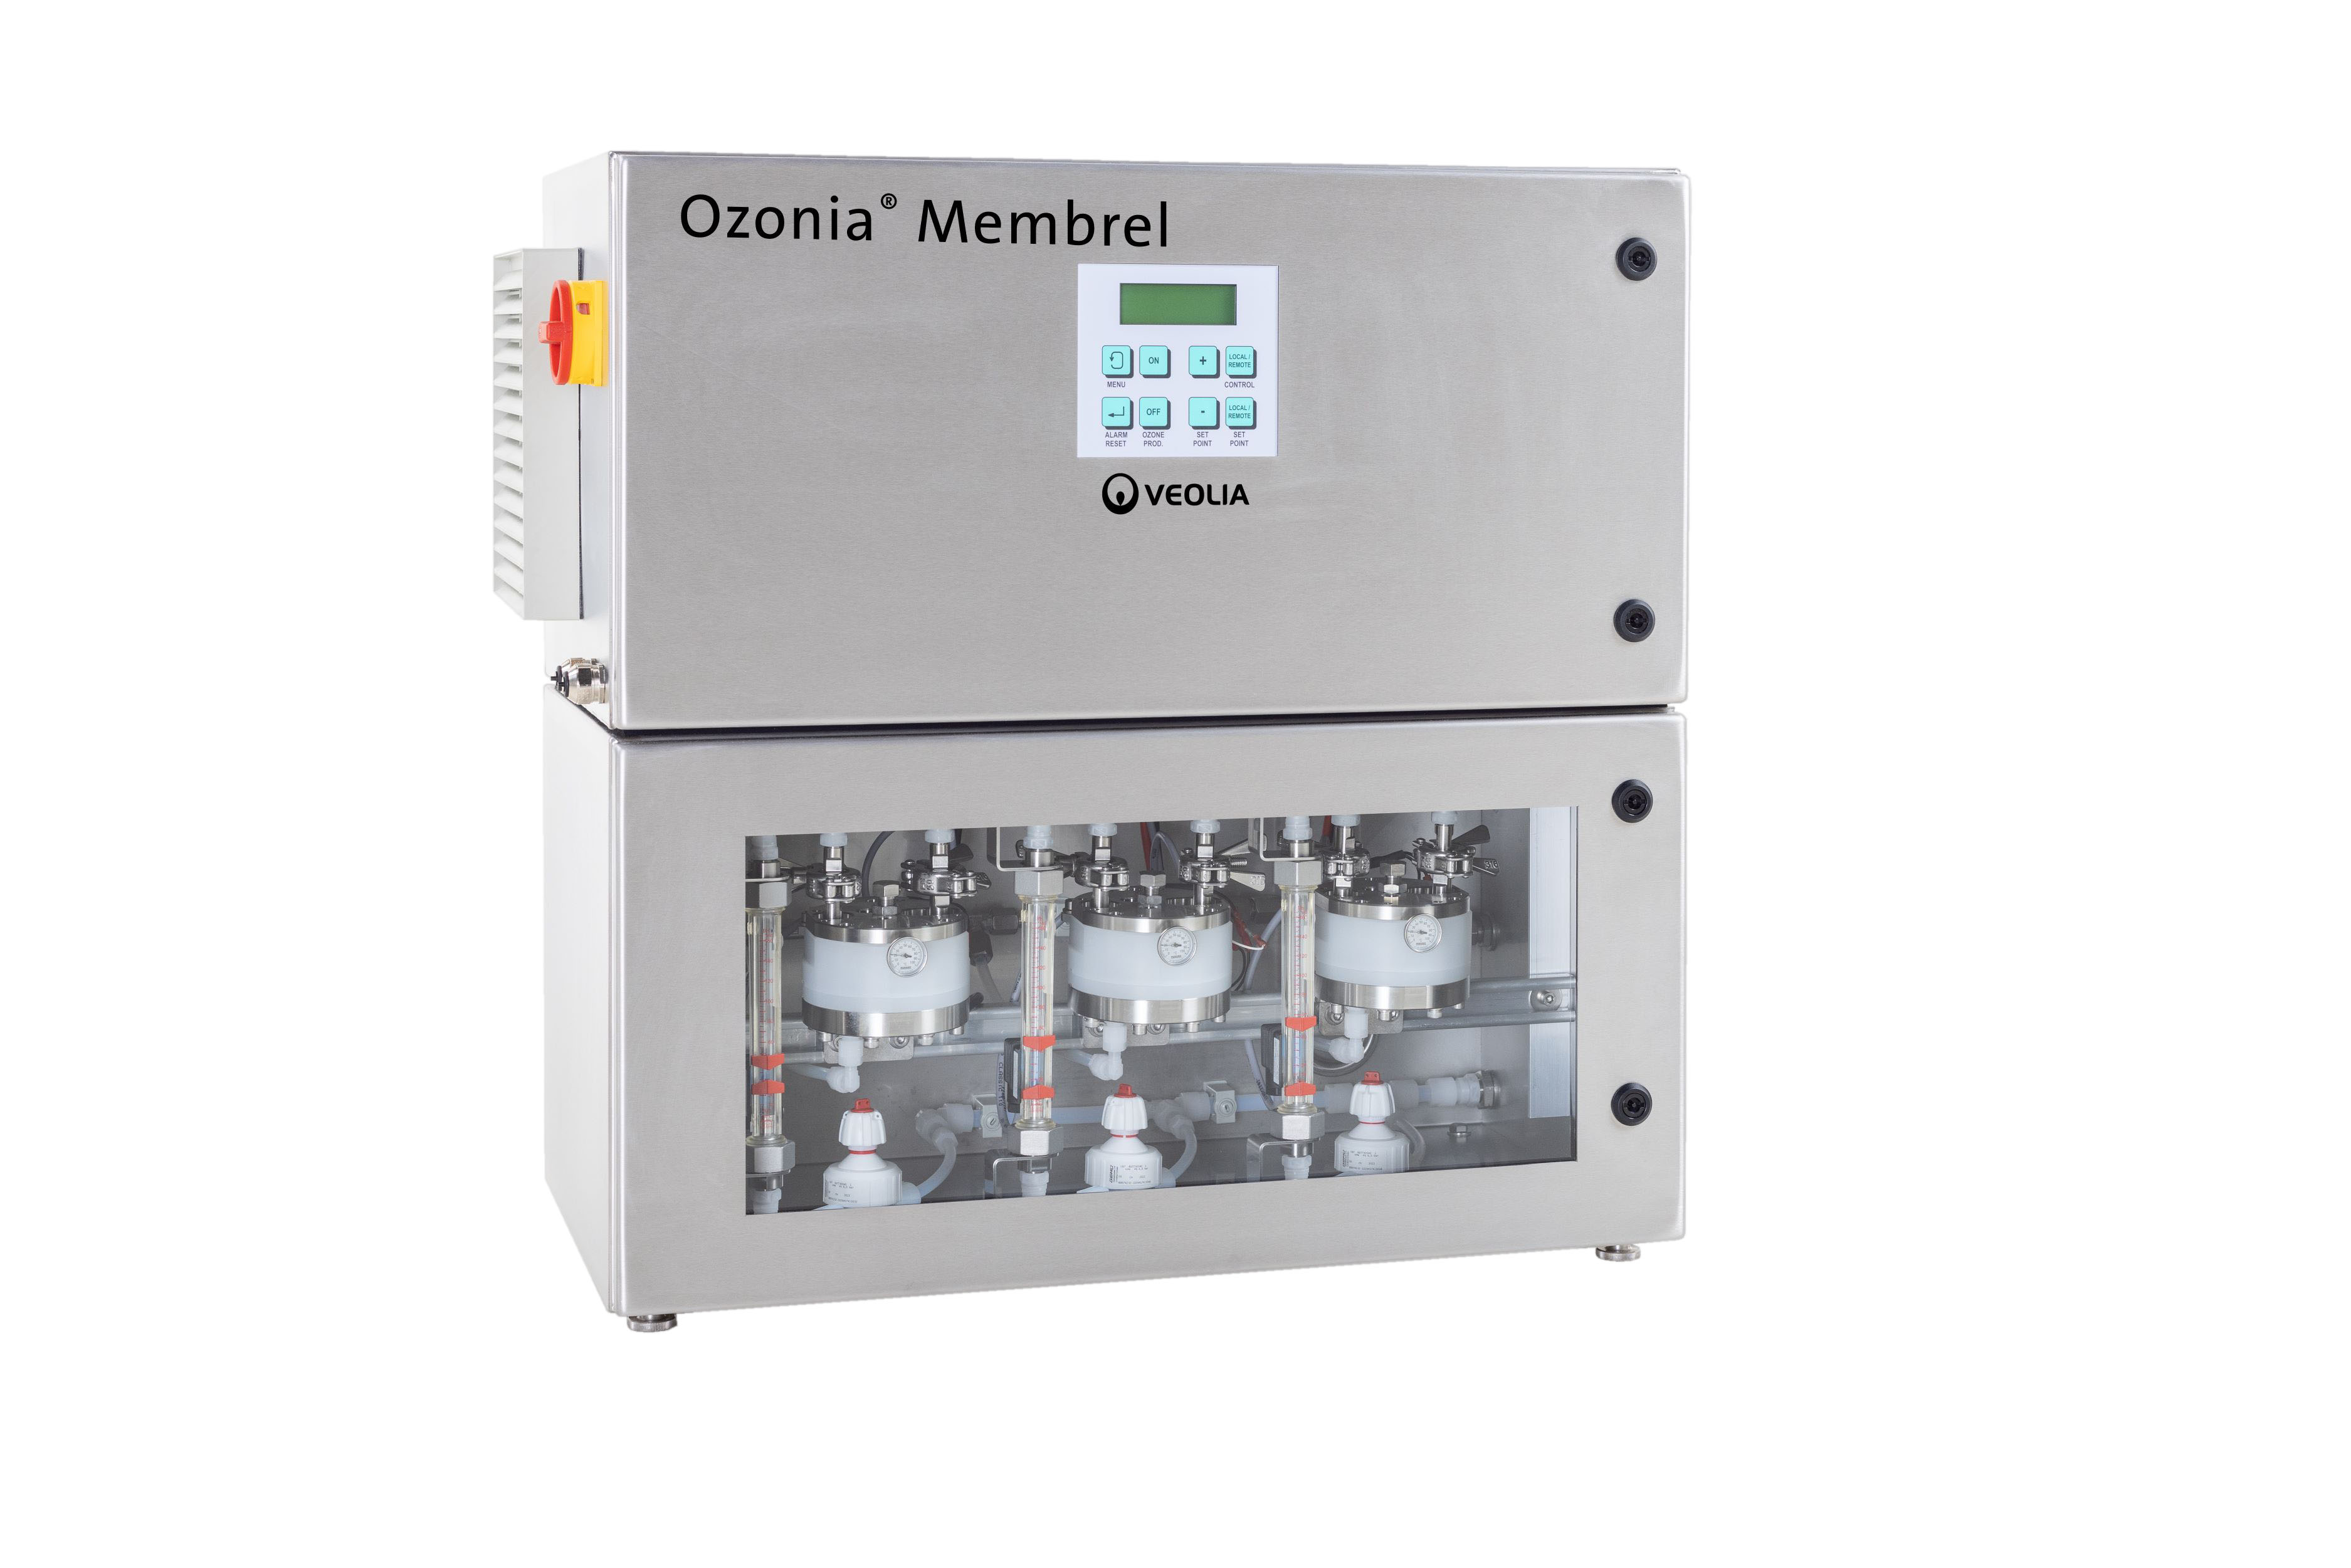 Ozonia Membrel MkV-S-1 - Elektrolytischer Ozongenerator, Ozonleistung 3-4 g/h, Systemanlage